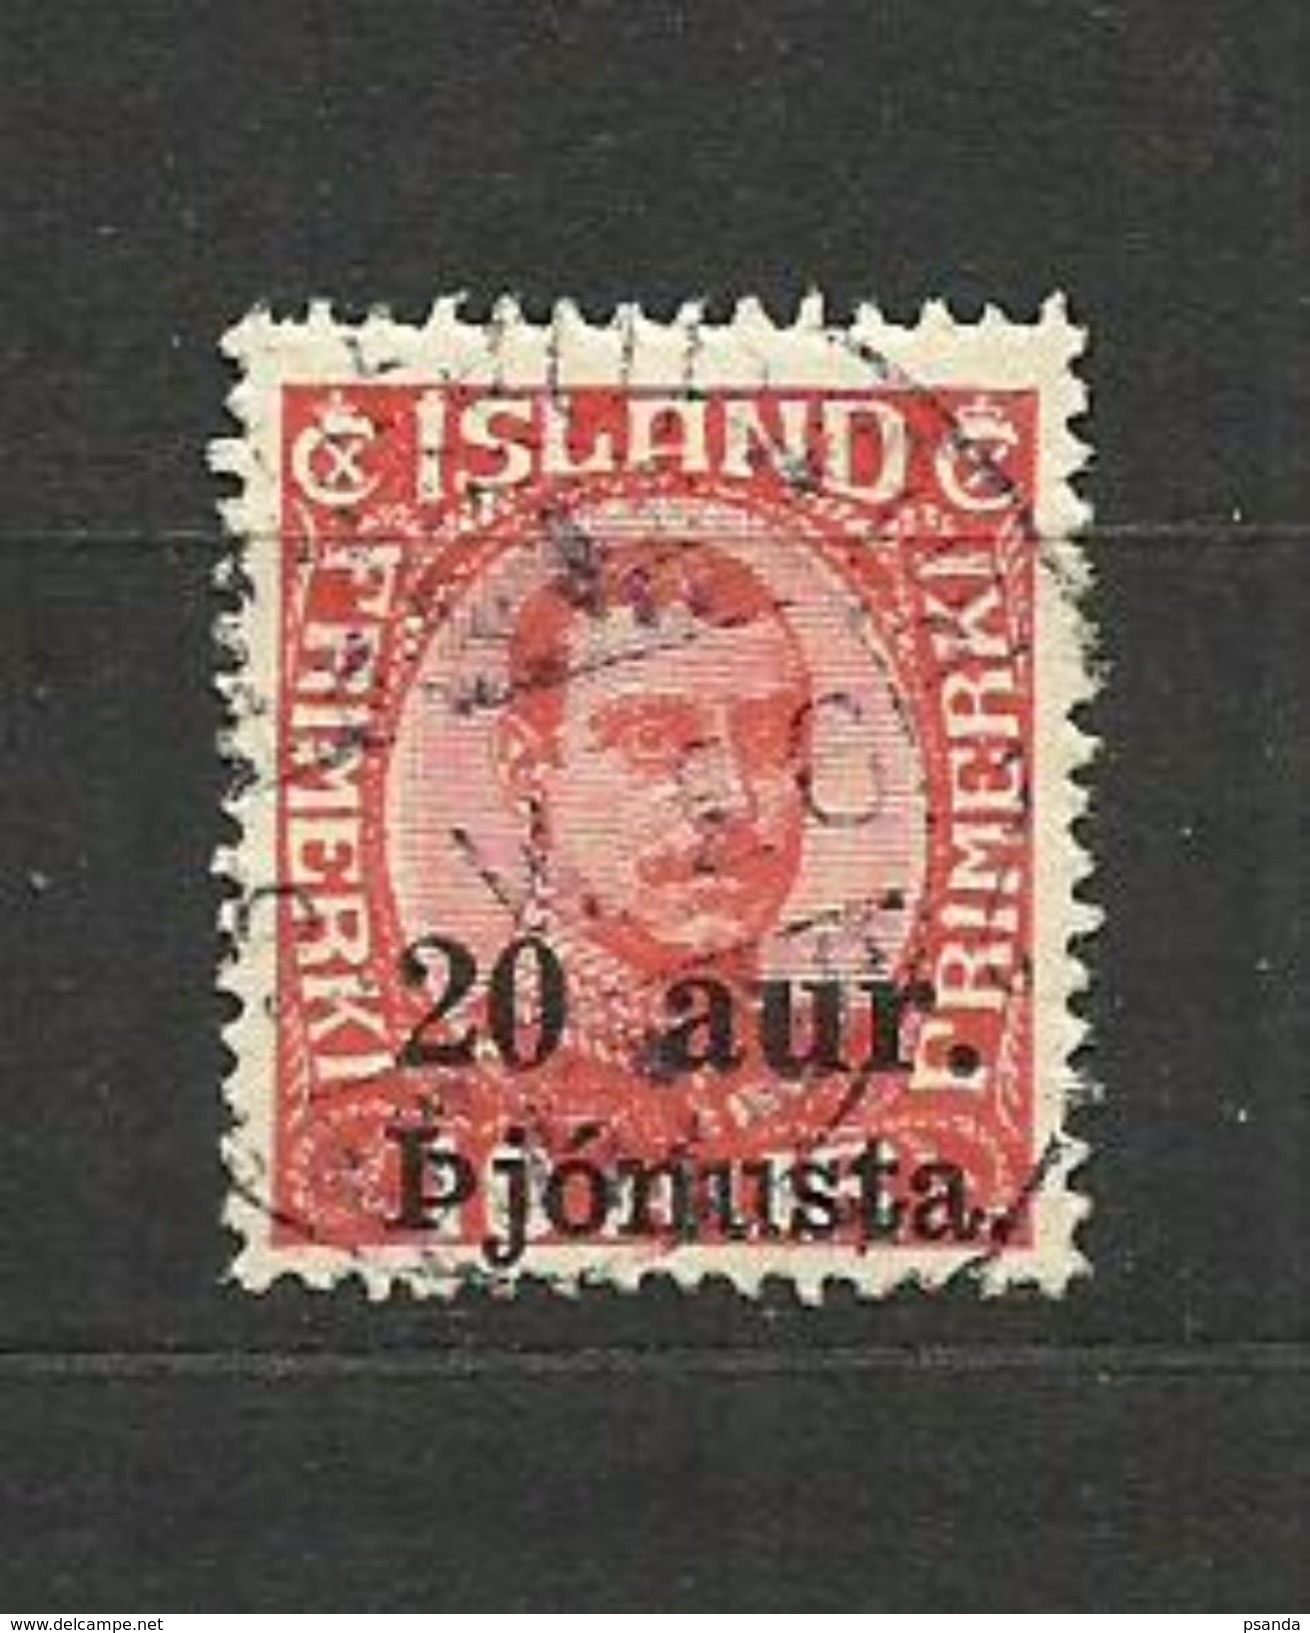 Europe > Iceland > 1923 Postage Due - Ganzsachen